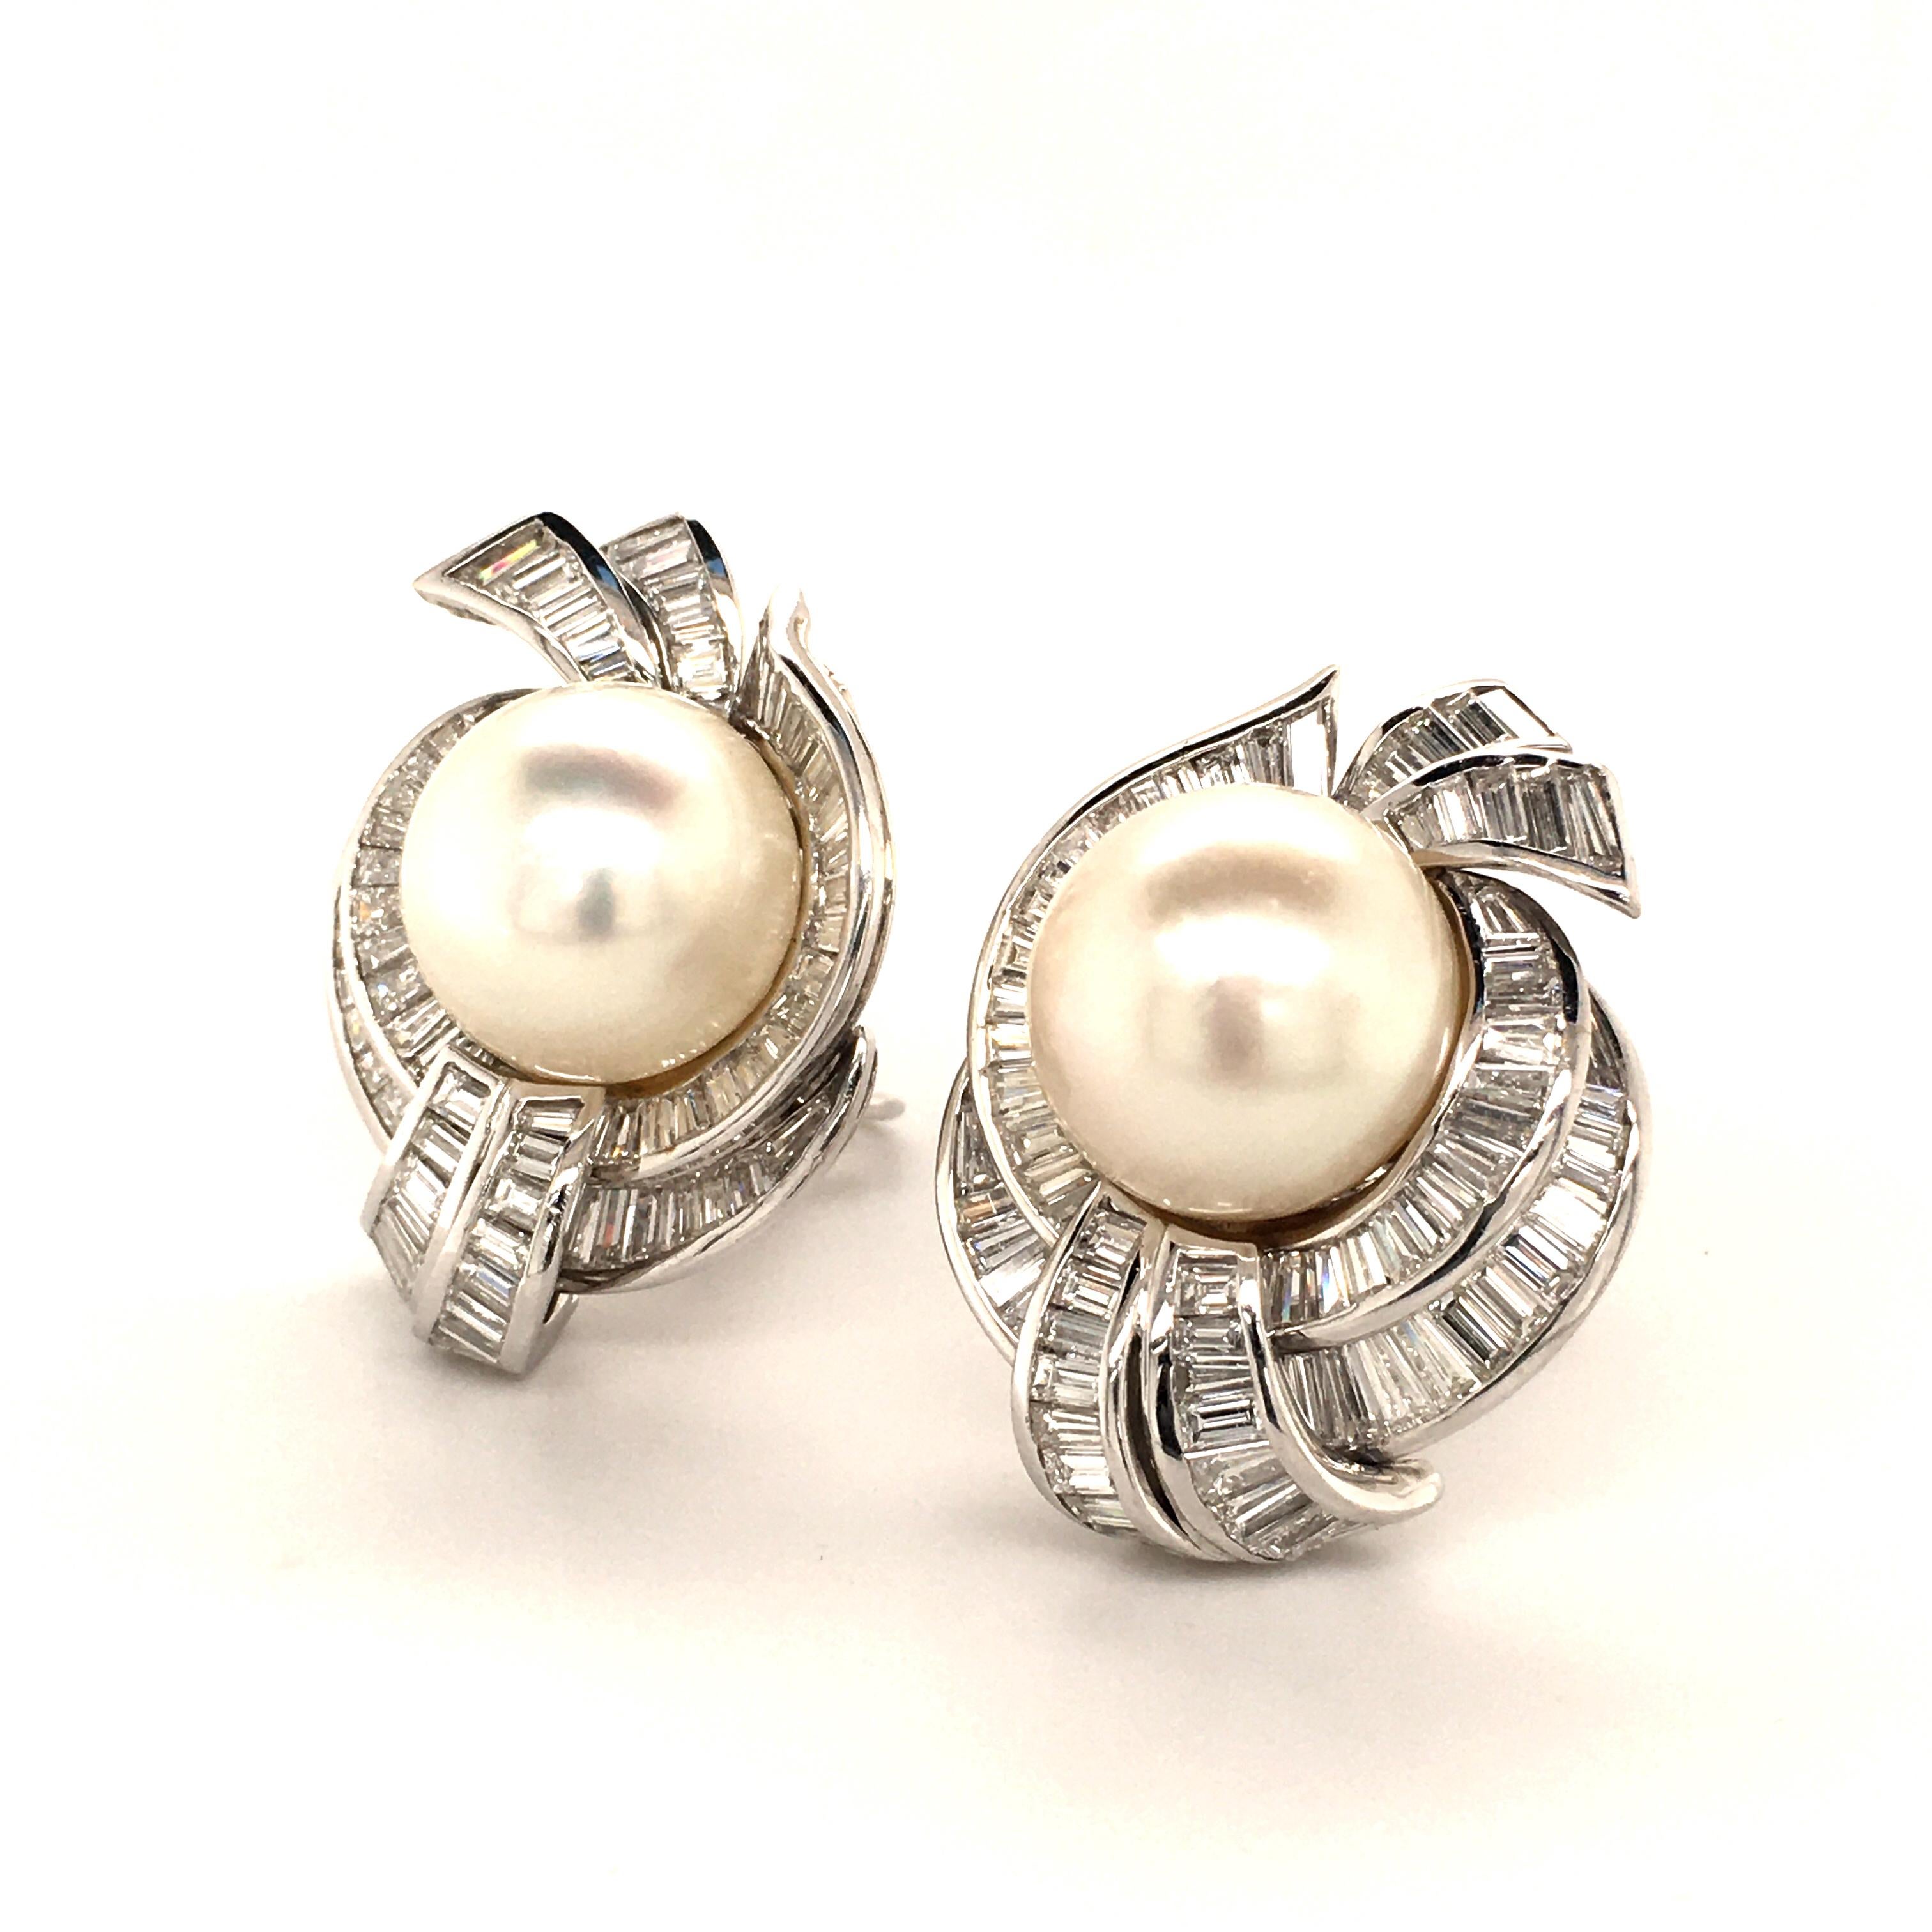 750 white gold earrings